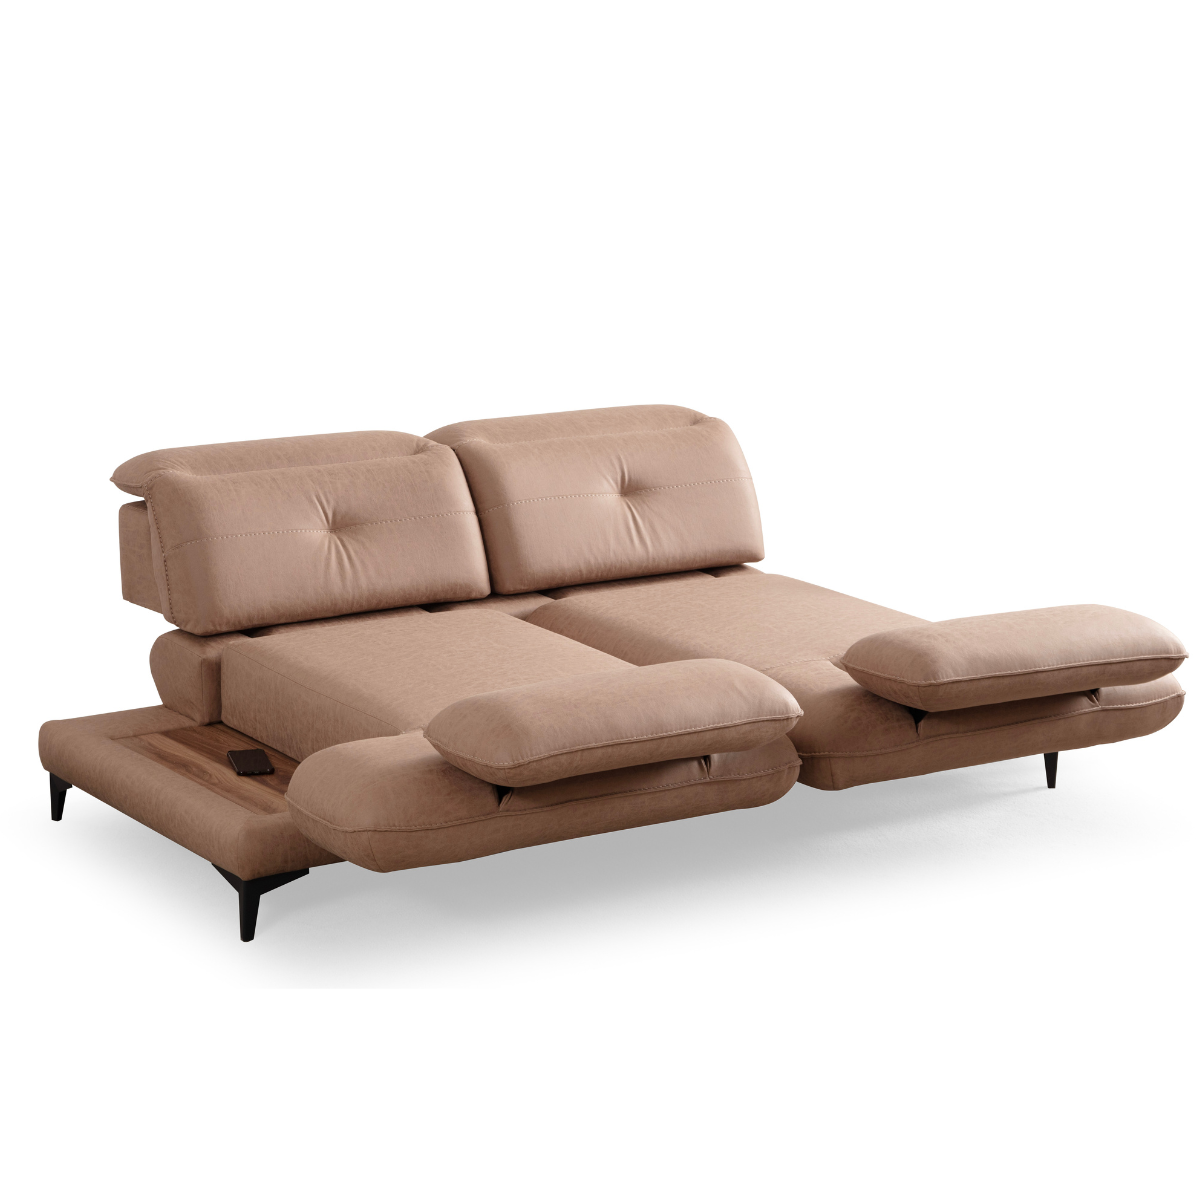 Canapea moderna cu extensie , Torino S